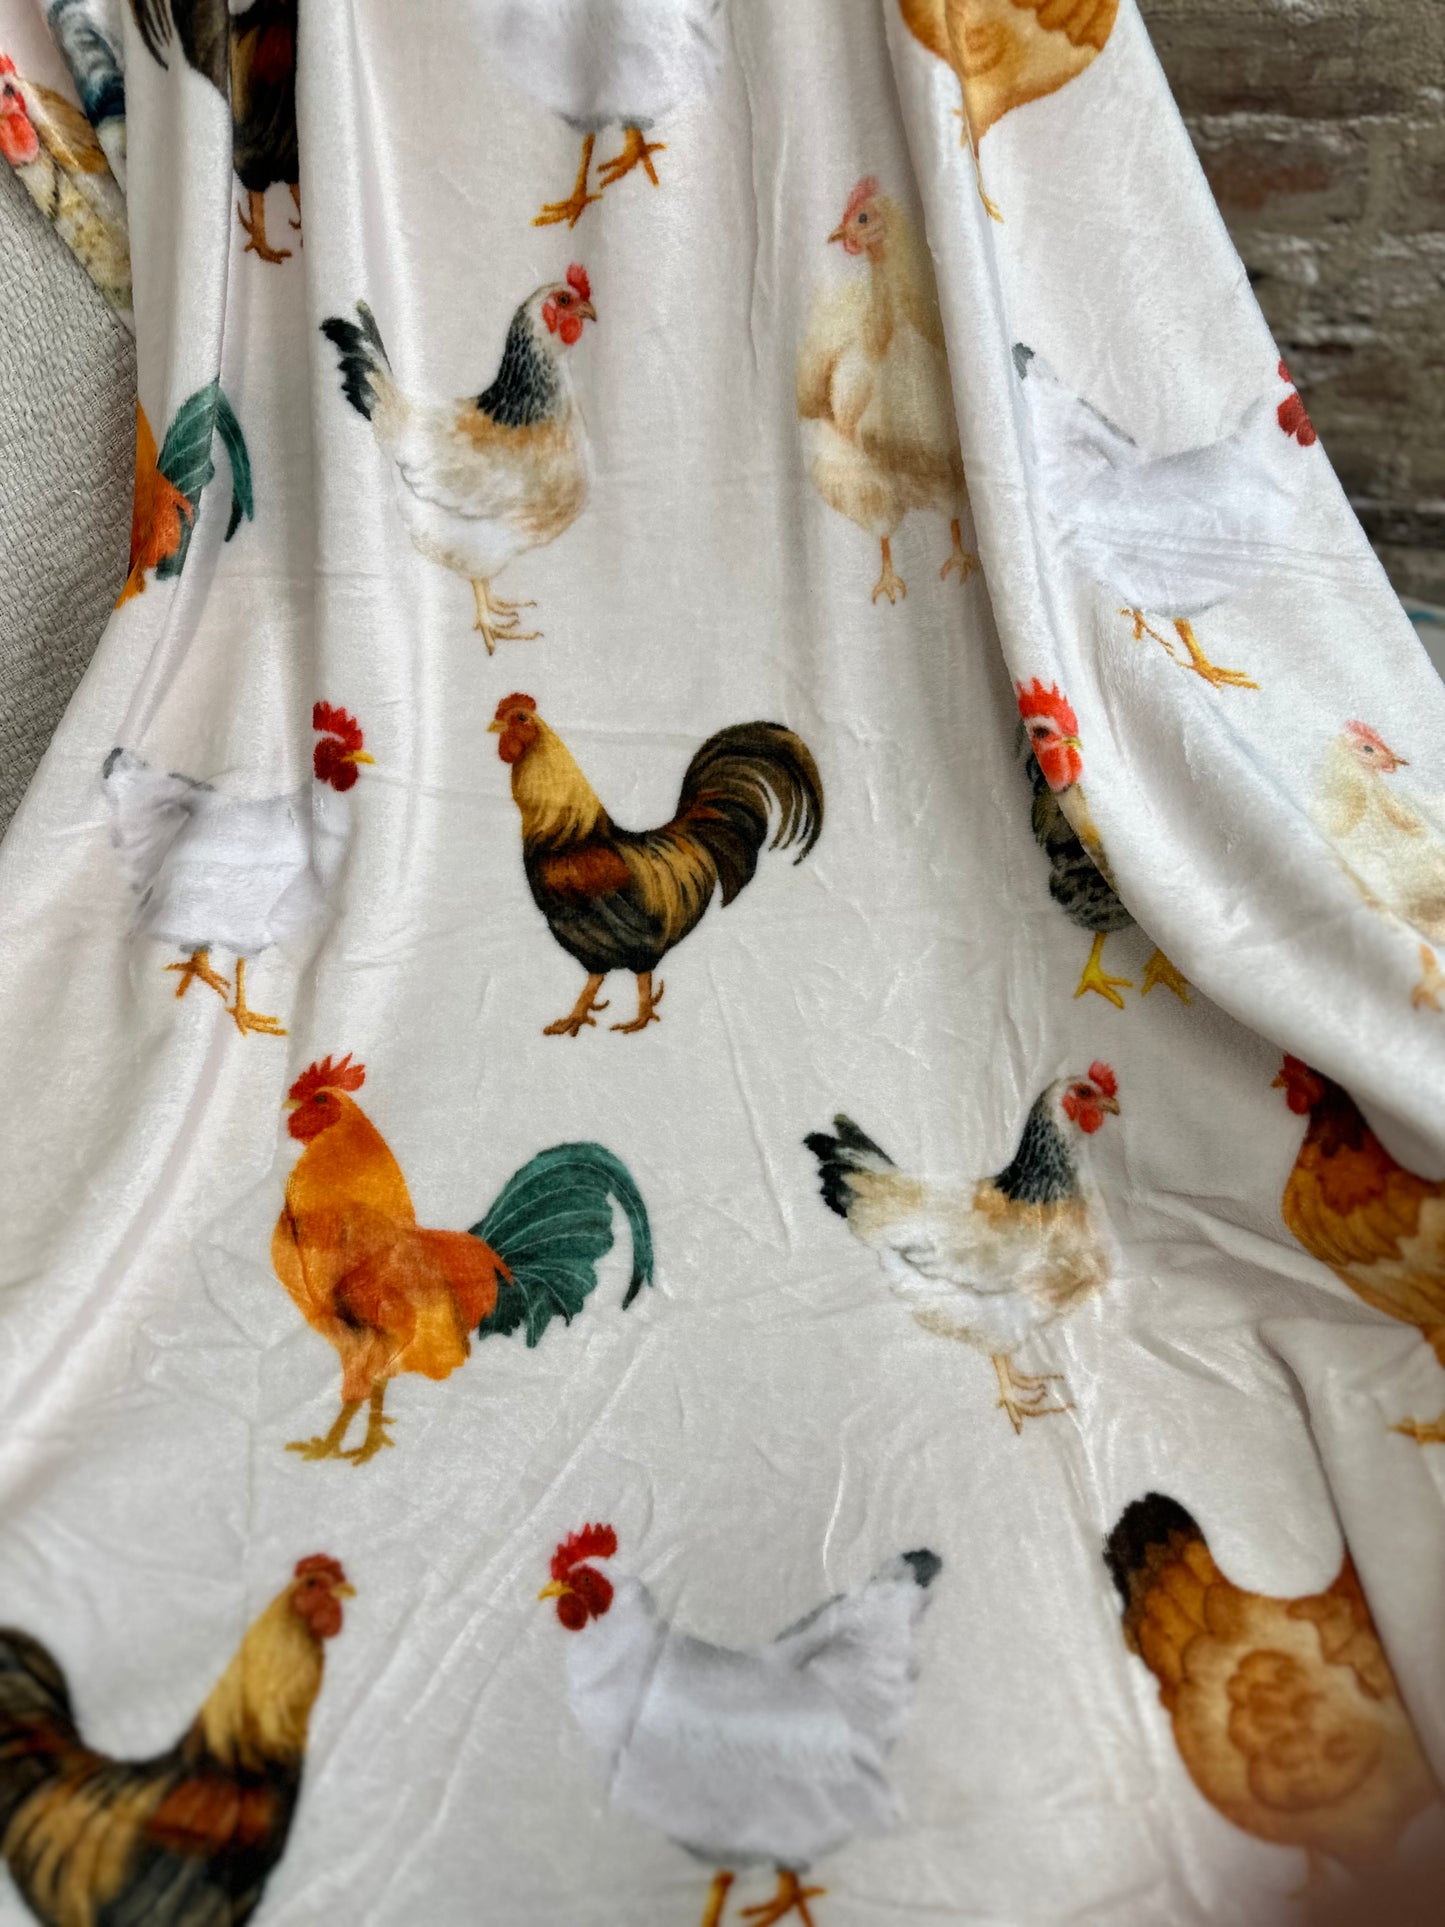 The Chicken Blanket